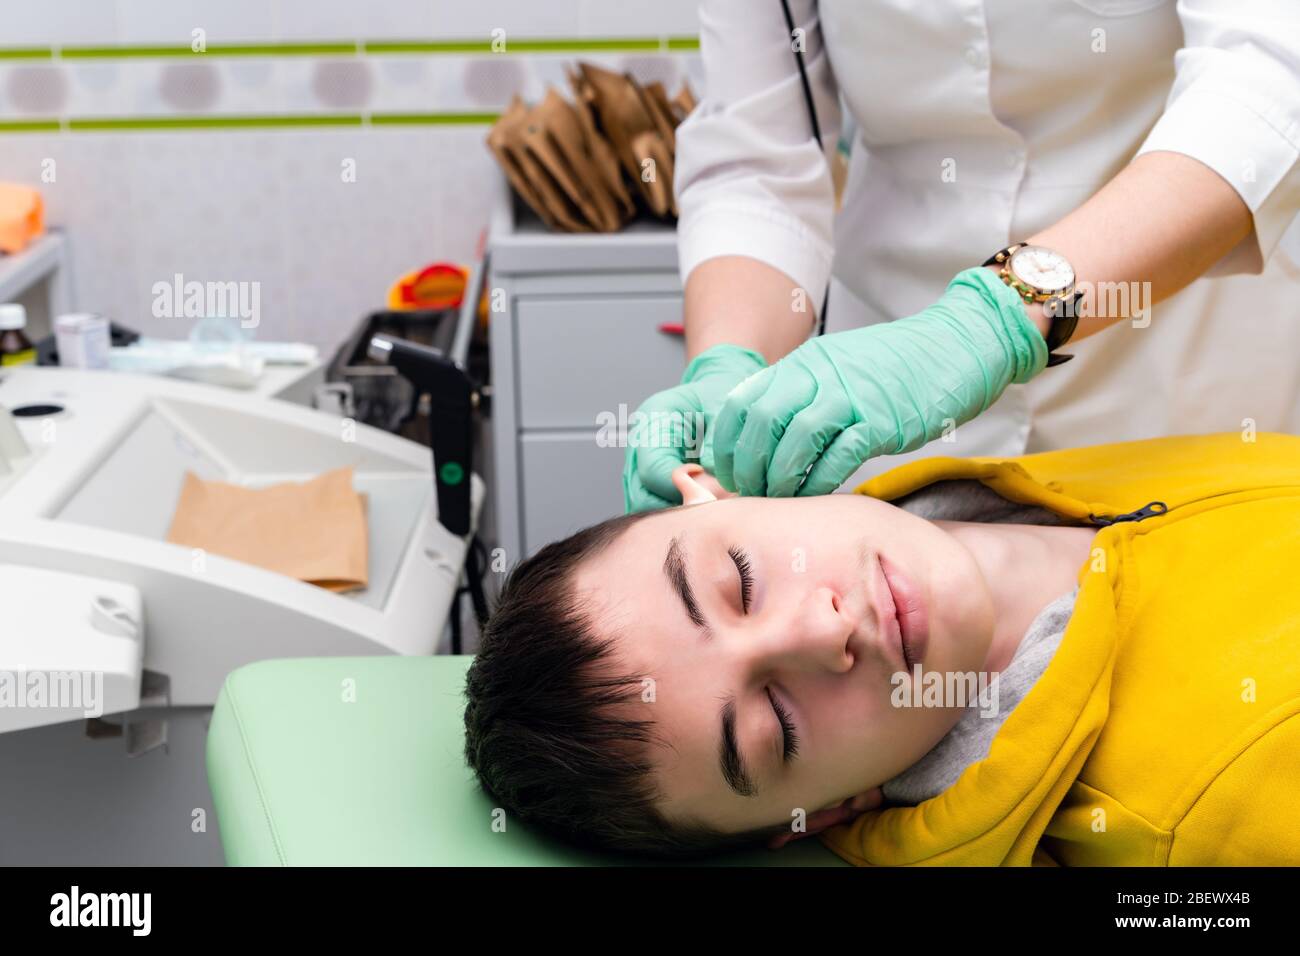 Vorbeugende Prüfung der ein Teenager in einer medizinischen Einrichtung. Stockfoto